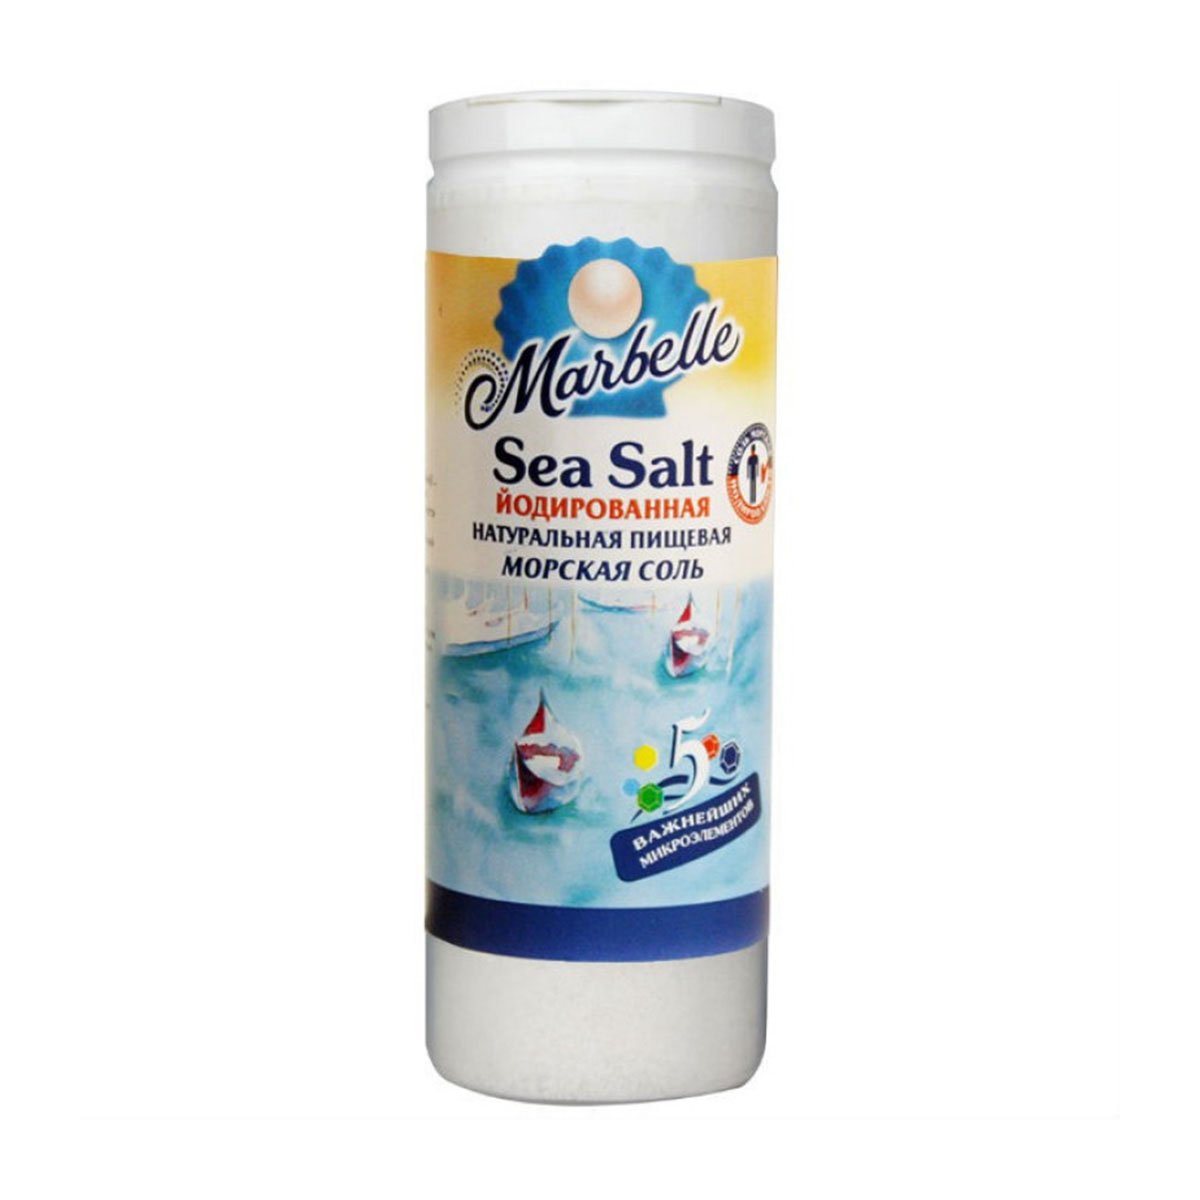 Купить морскую соль в москве. Marbelle соль морская, мелкая, 150 г. Marbelle соль морская йодированная мелкая 150 г. Соль Marbelle морская мелкая. Соль морская пищевая Marbelle йодированная, 750 г.